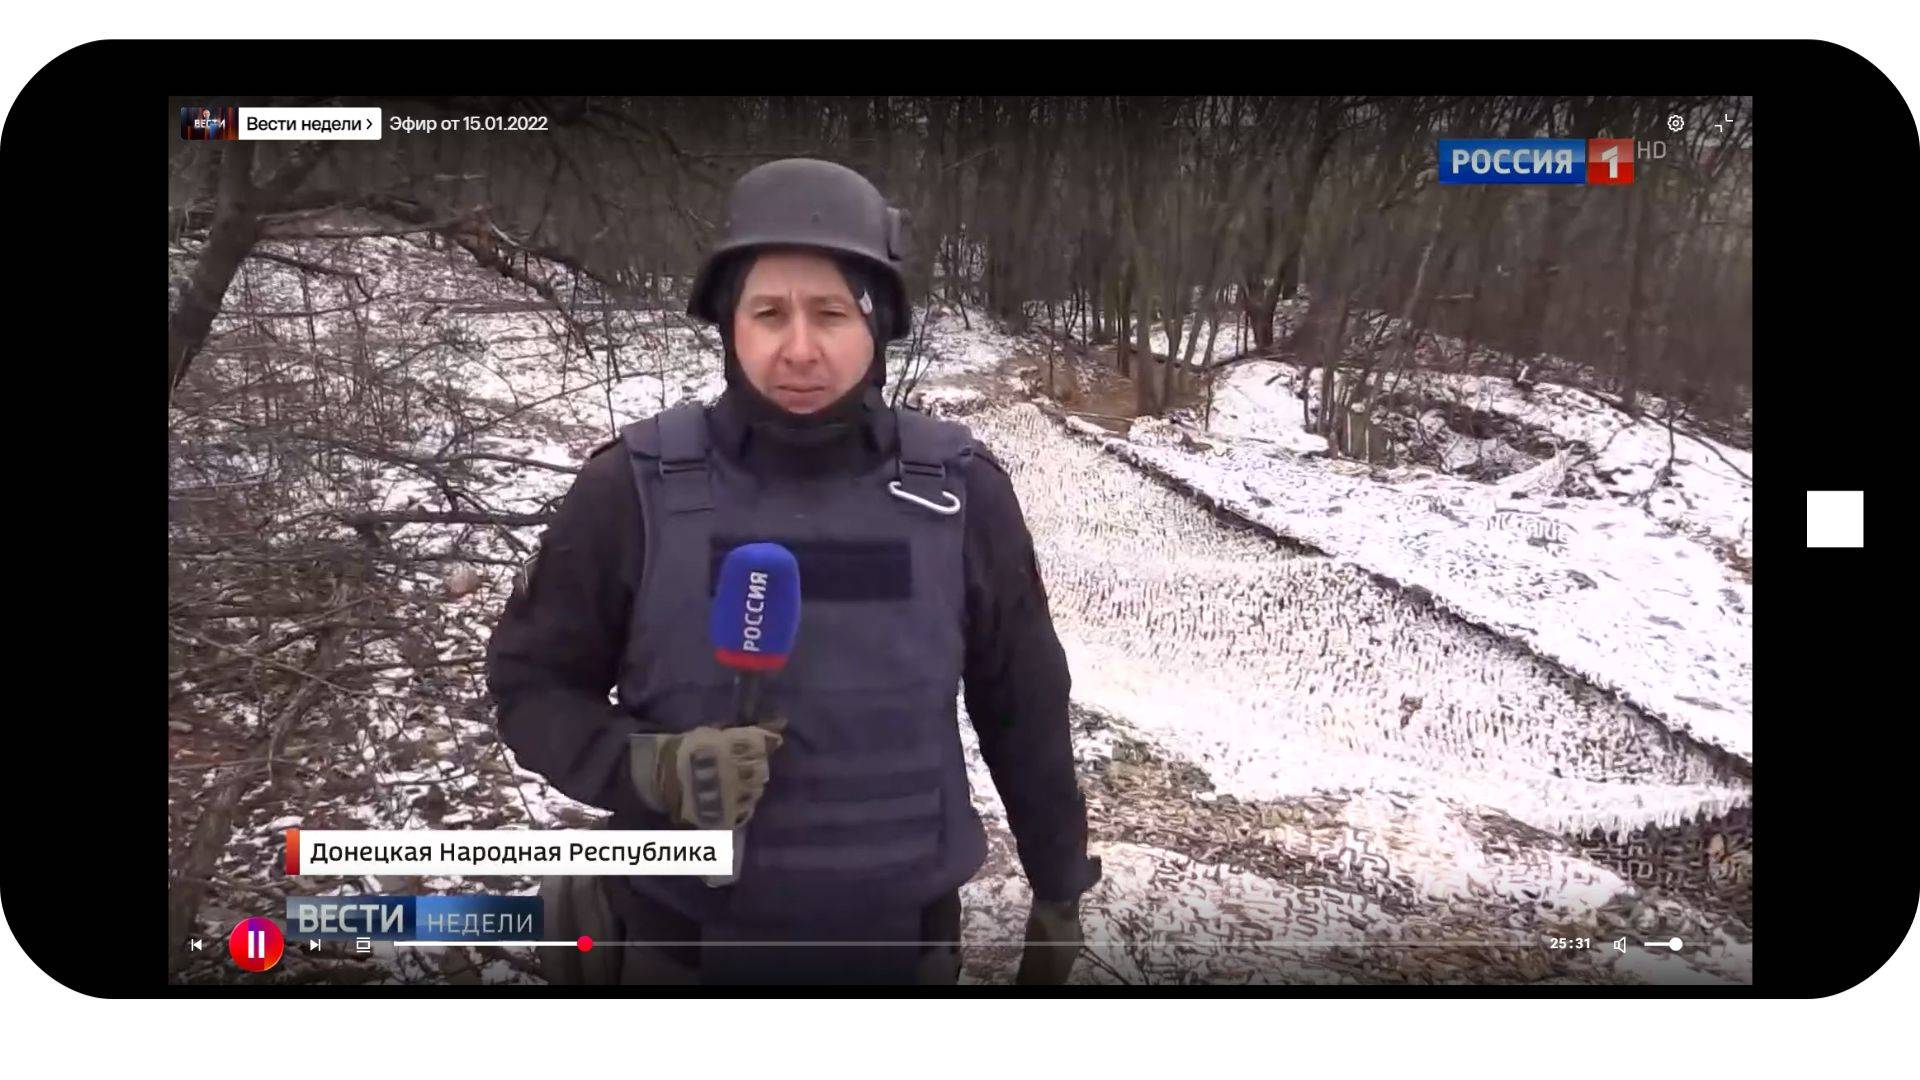 Grafika: w ramkę telefonu komórkowego wklejone zdjęcie dziennikarza w hełmie i z mikrofonem z napisem Rossija 1